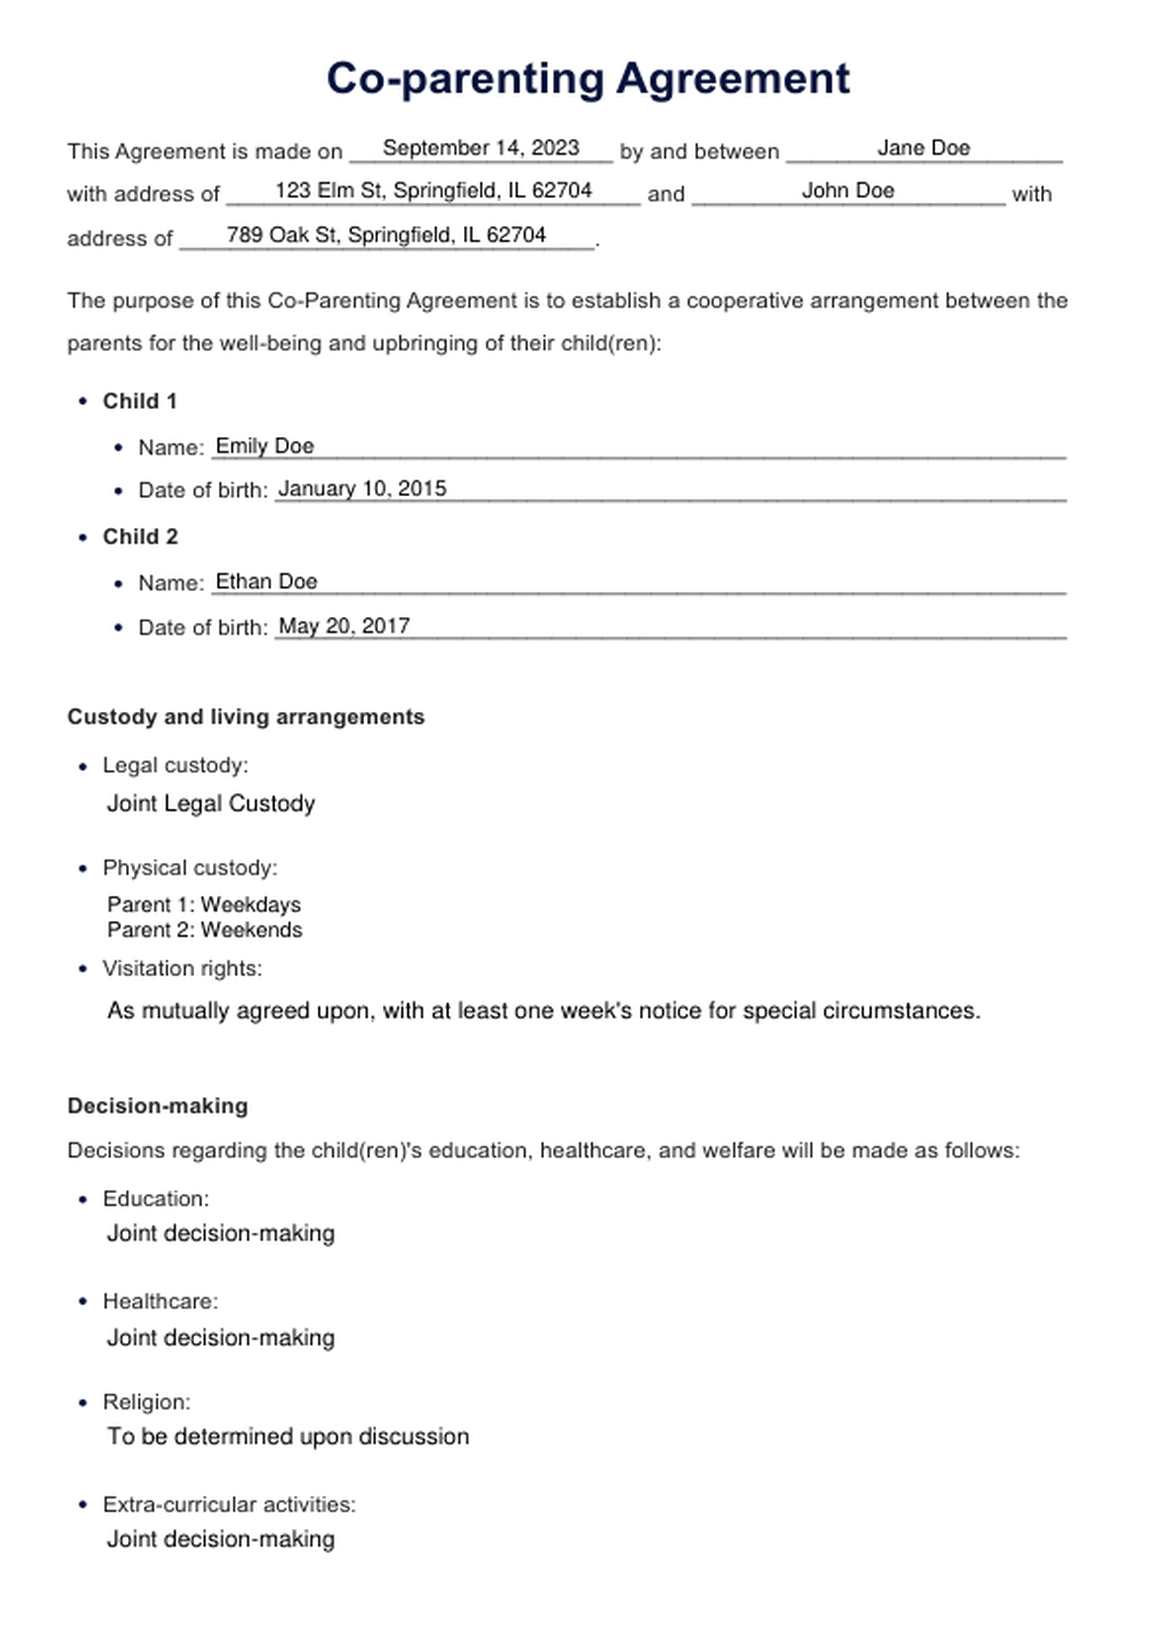 Plantilla de Acuerdos de co-paternidad PDF Example